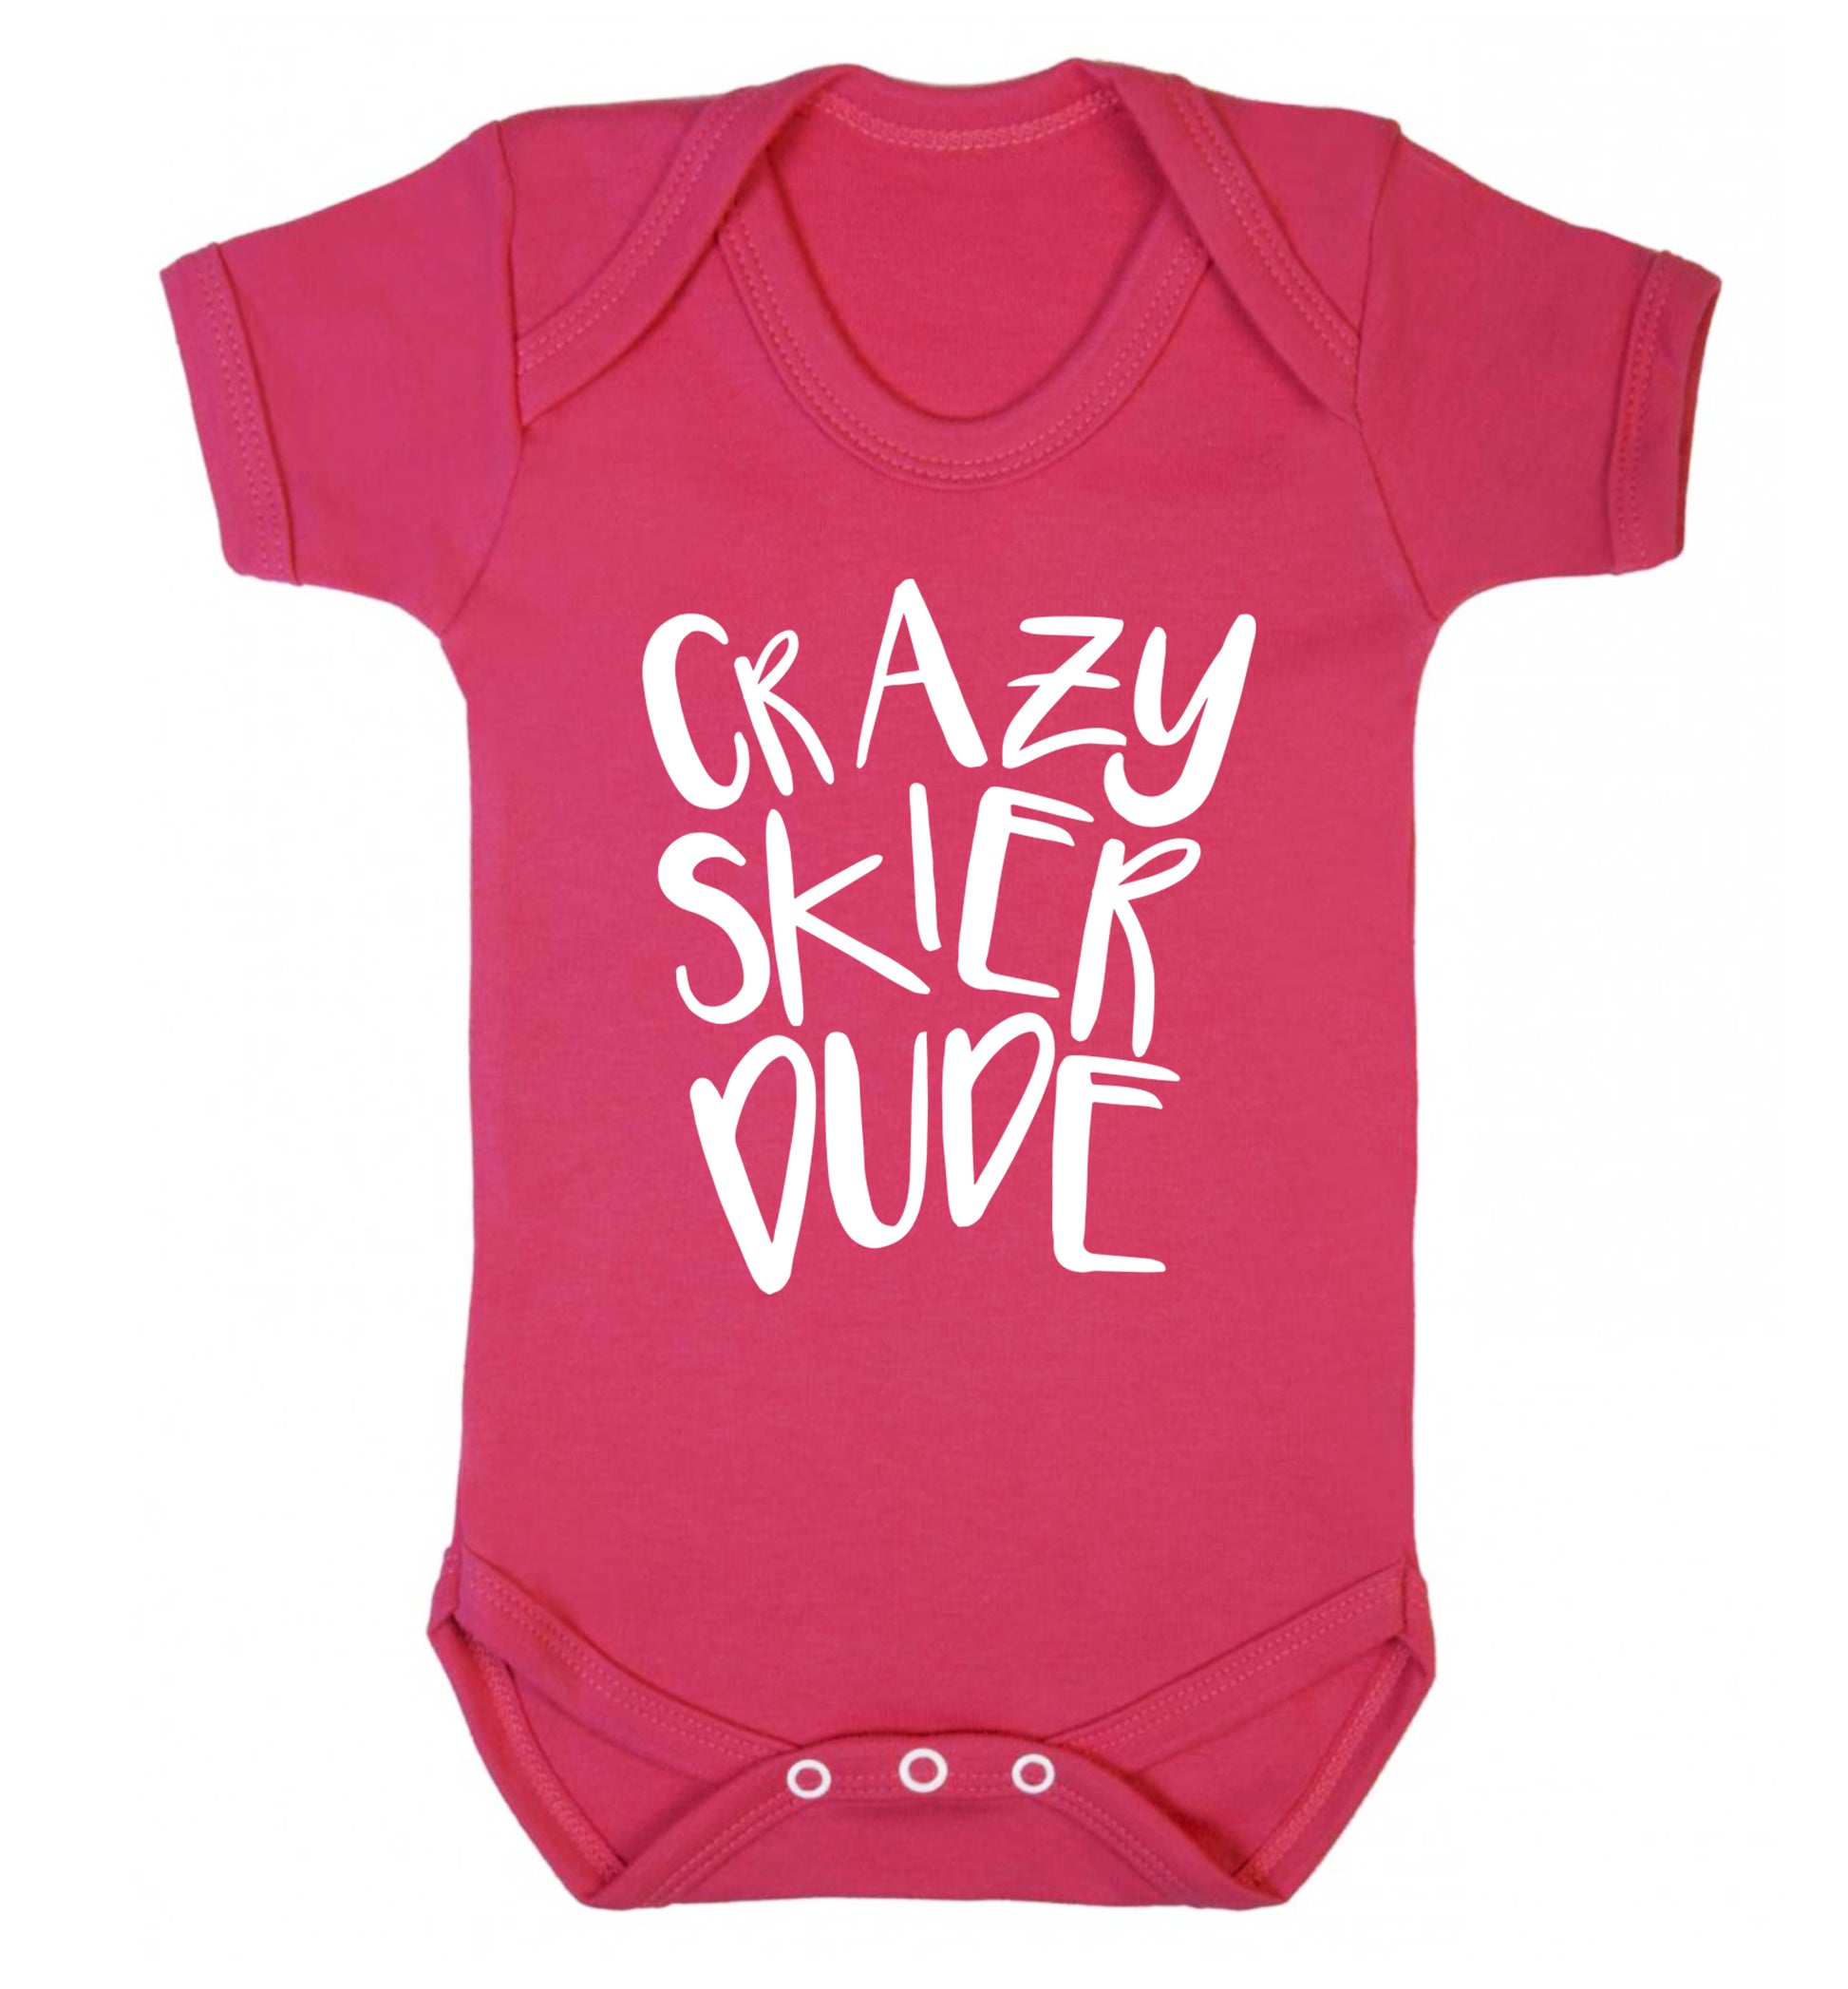 Crazy skier dude Baby Vest dark pink 18-24 months